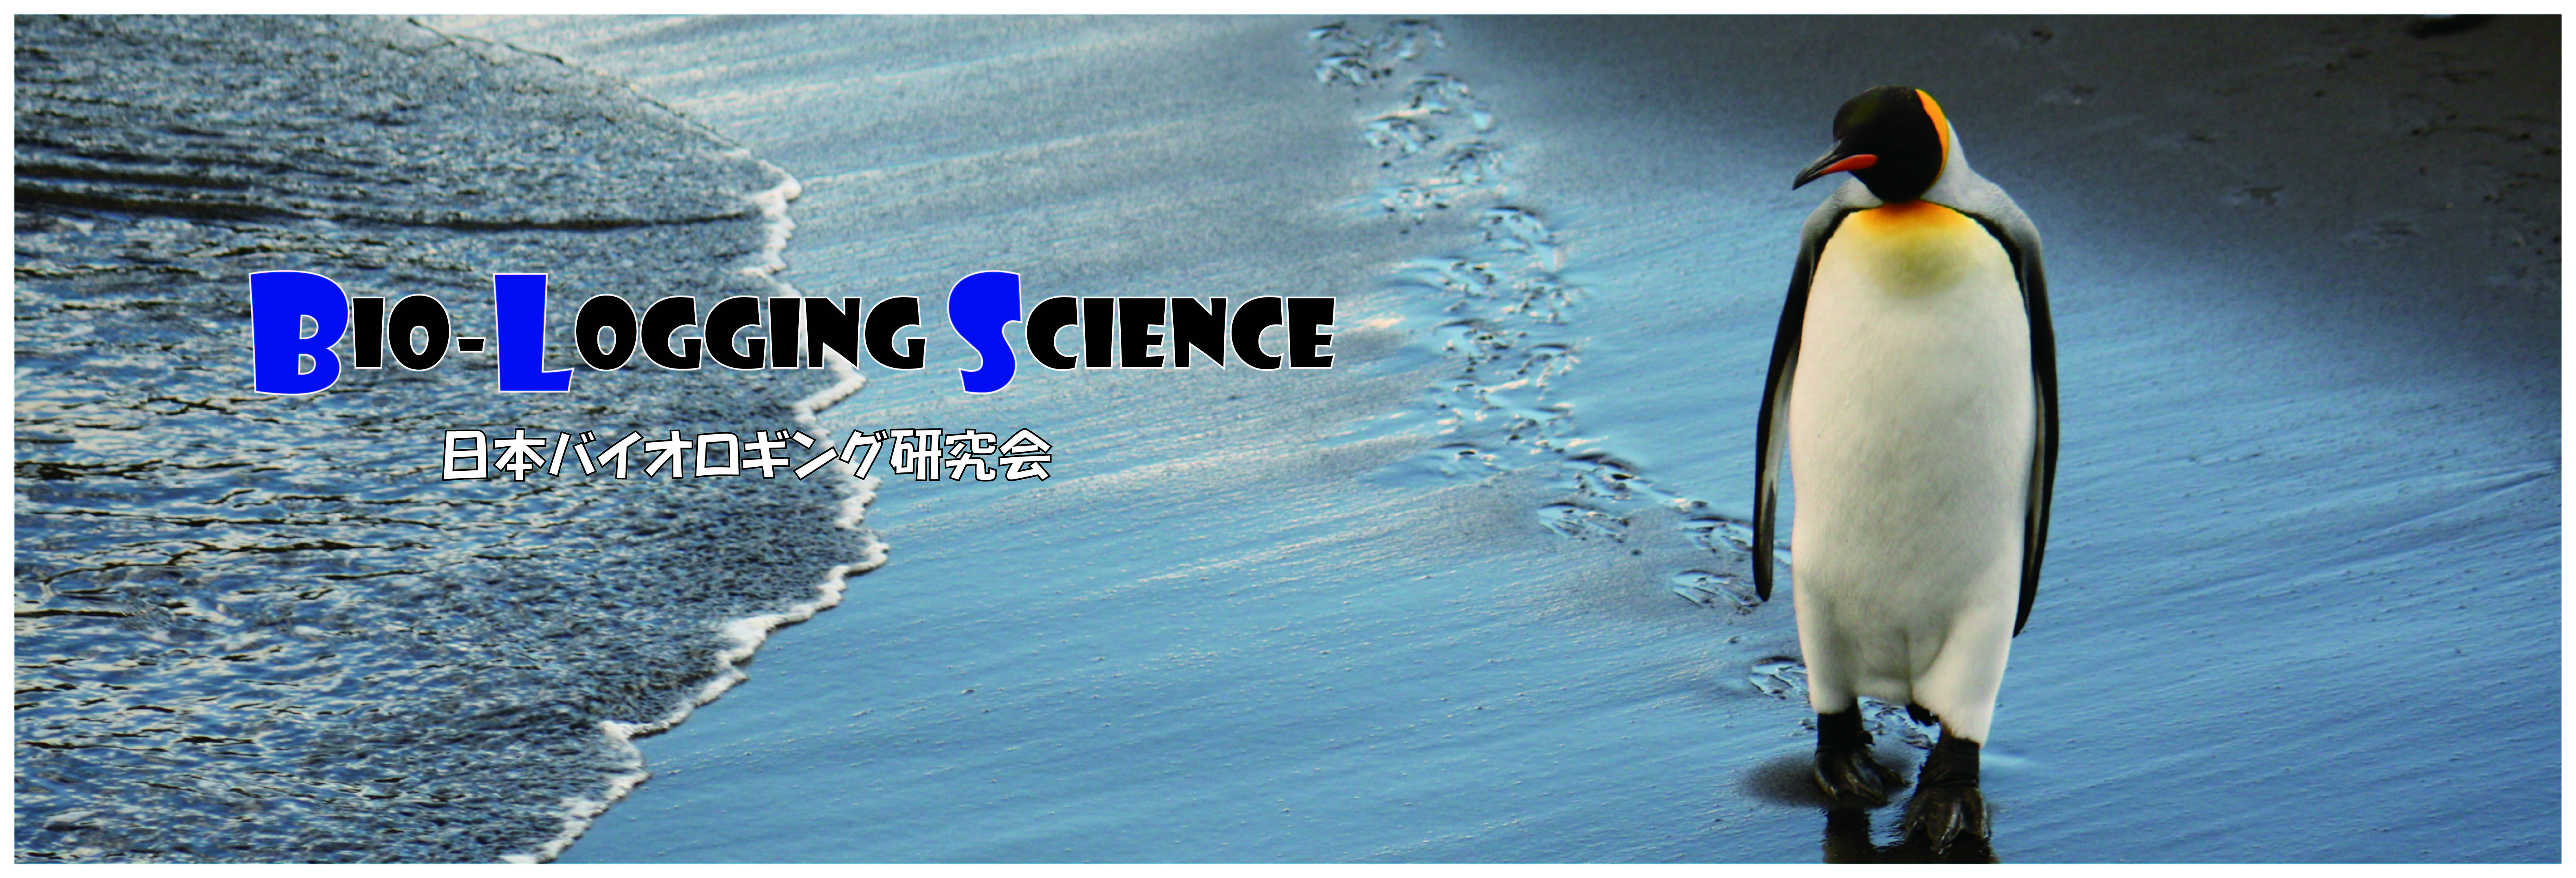 日本バイオロギング研究会_Biologging Science